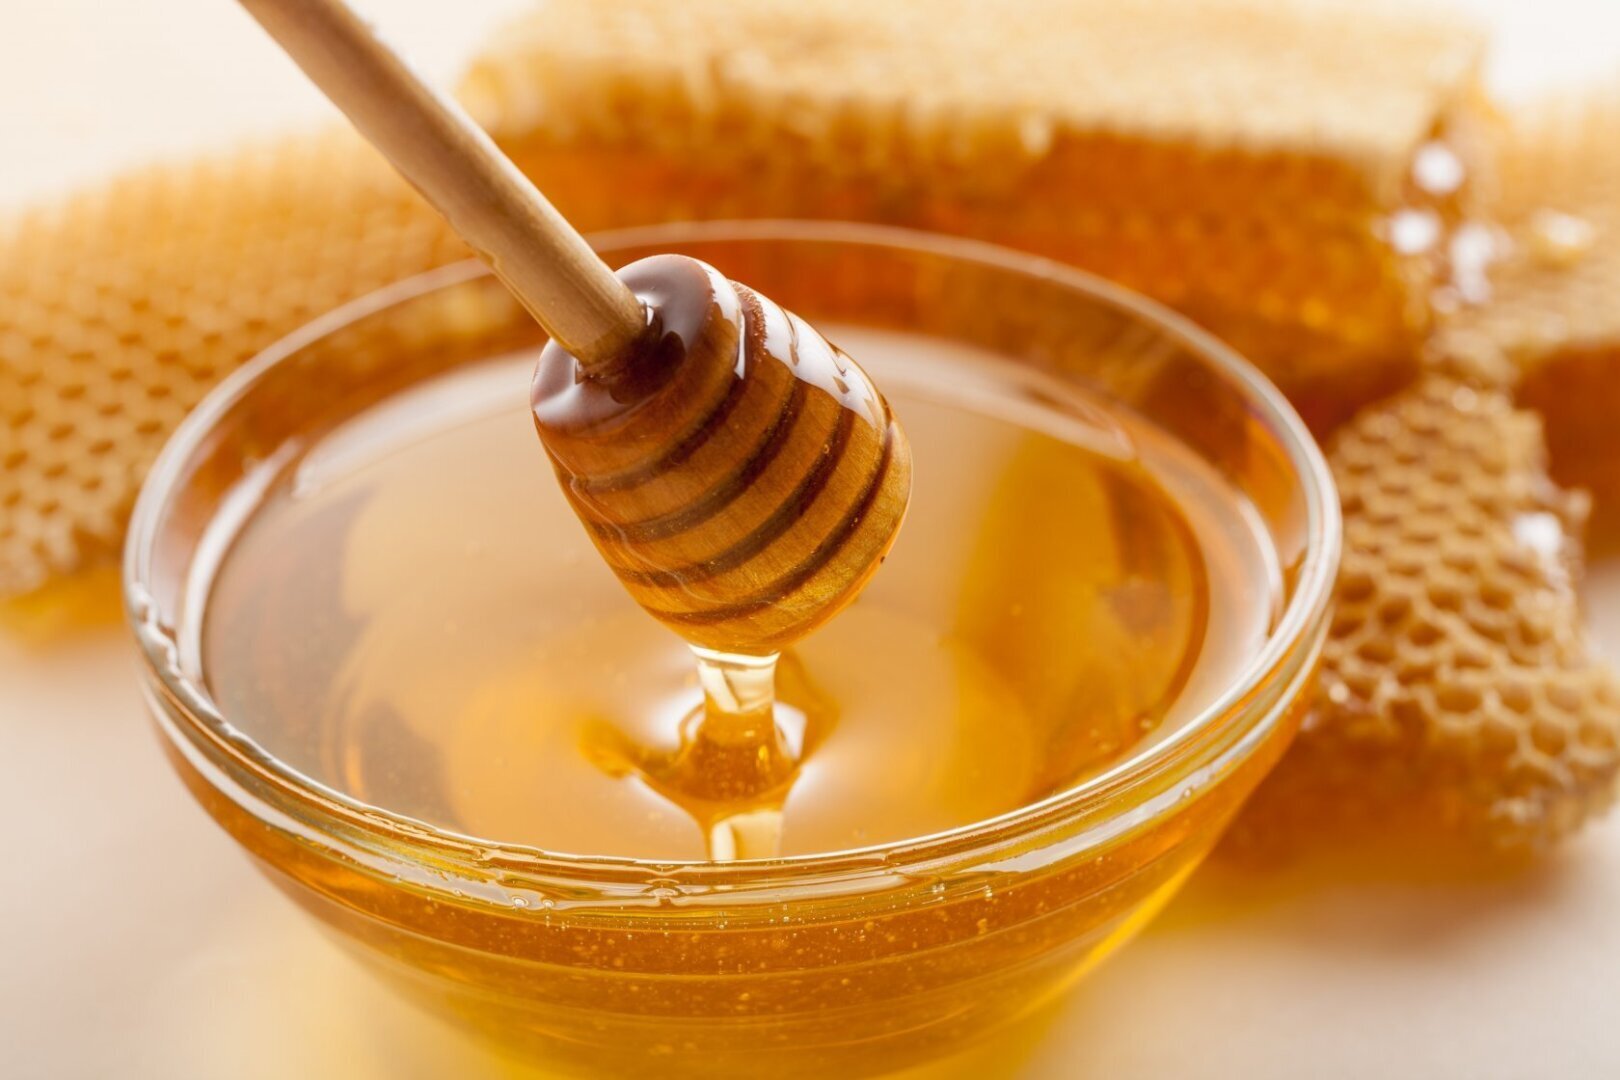 С 1 марта 2023 года вступают в силу новые правила ветсанэкспертизы меда